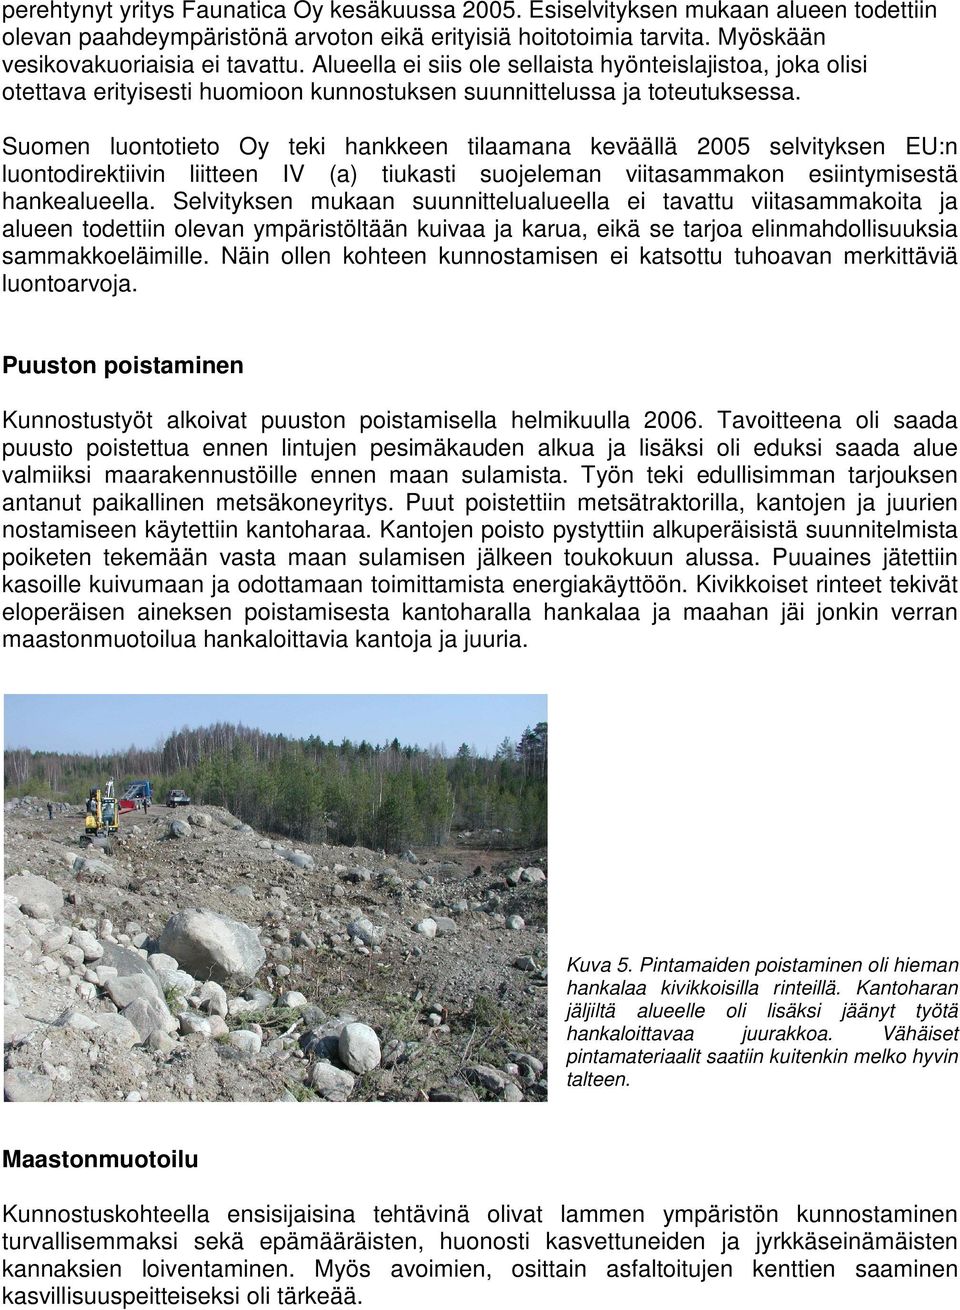 Suomen luontotieto Oy teki hankkeen tilaamana keväällä 2005 selvityksen EU:n luontodirektiivin liitteen IV (a) tiukasti suojeleman viitasammakon esiintymisestä hankealueella.